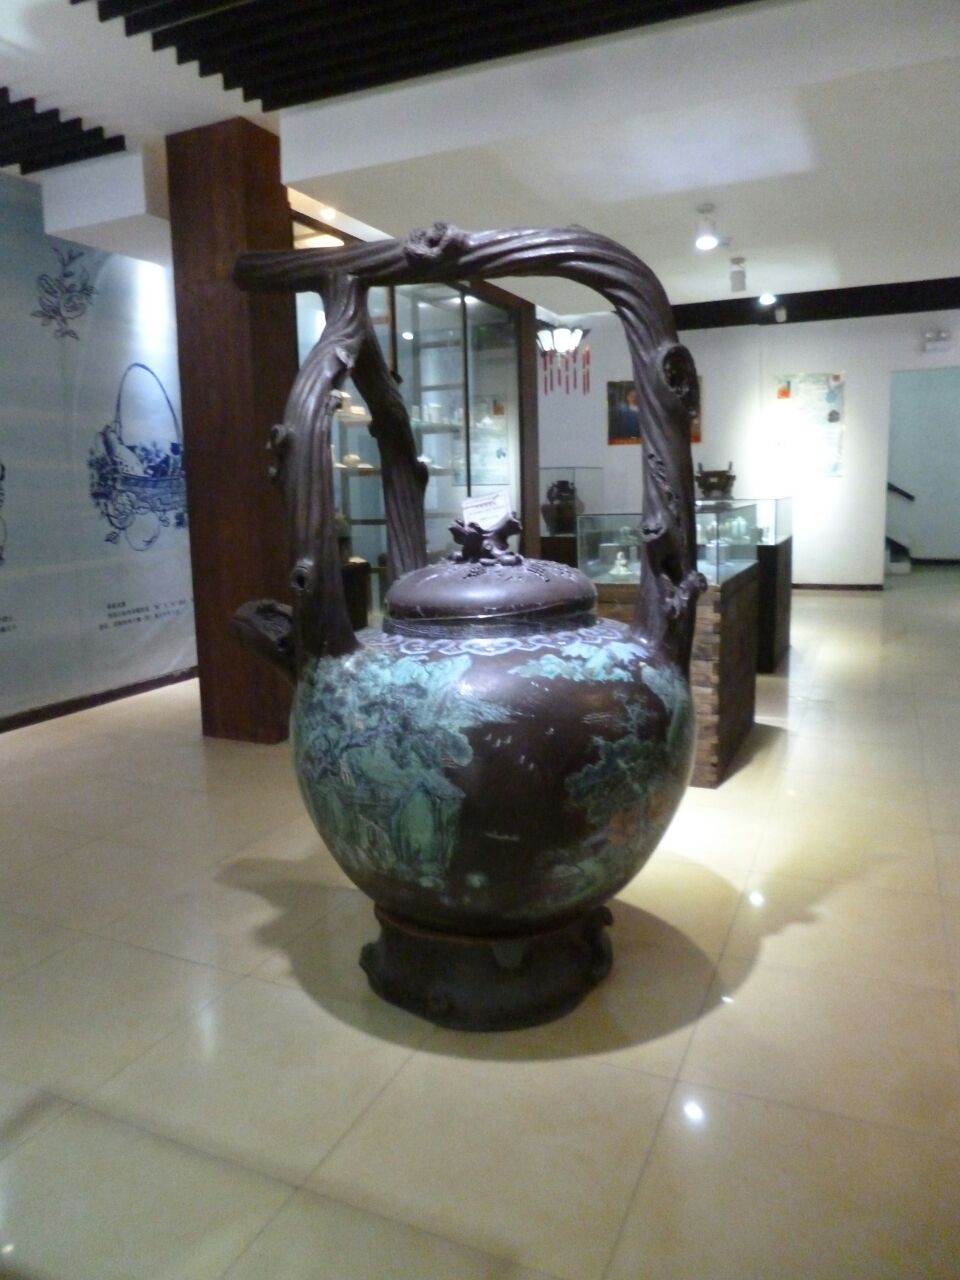 中国紫砂博物馆地址图片